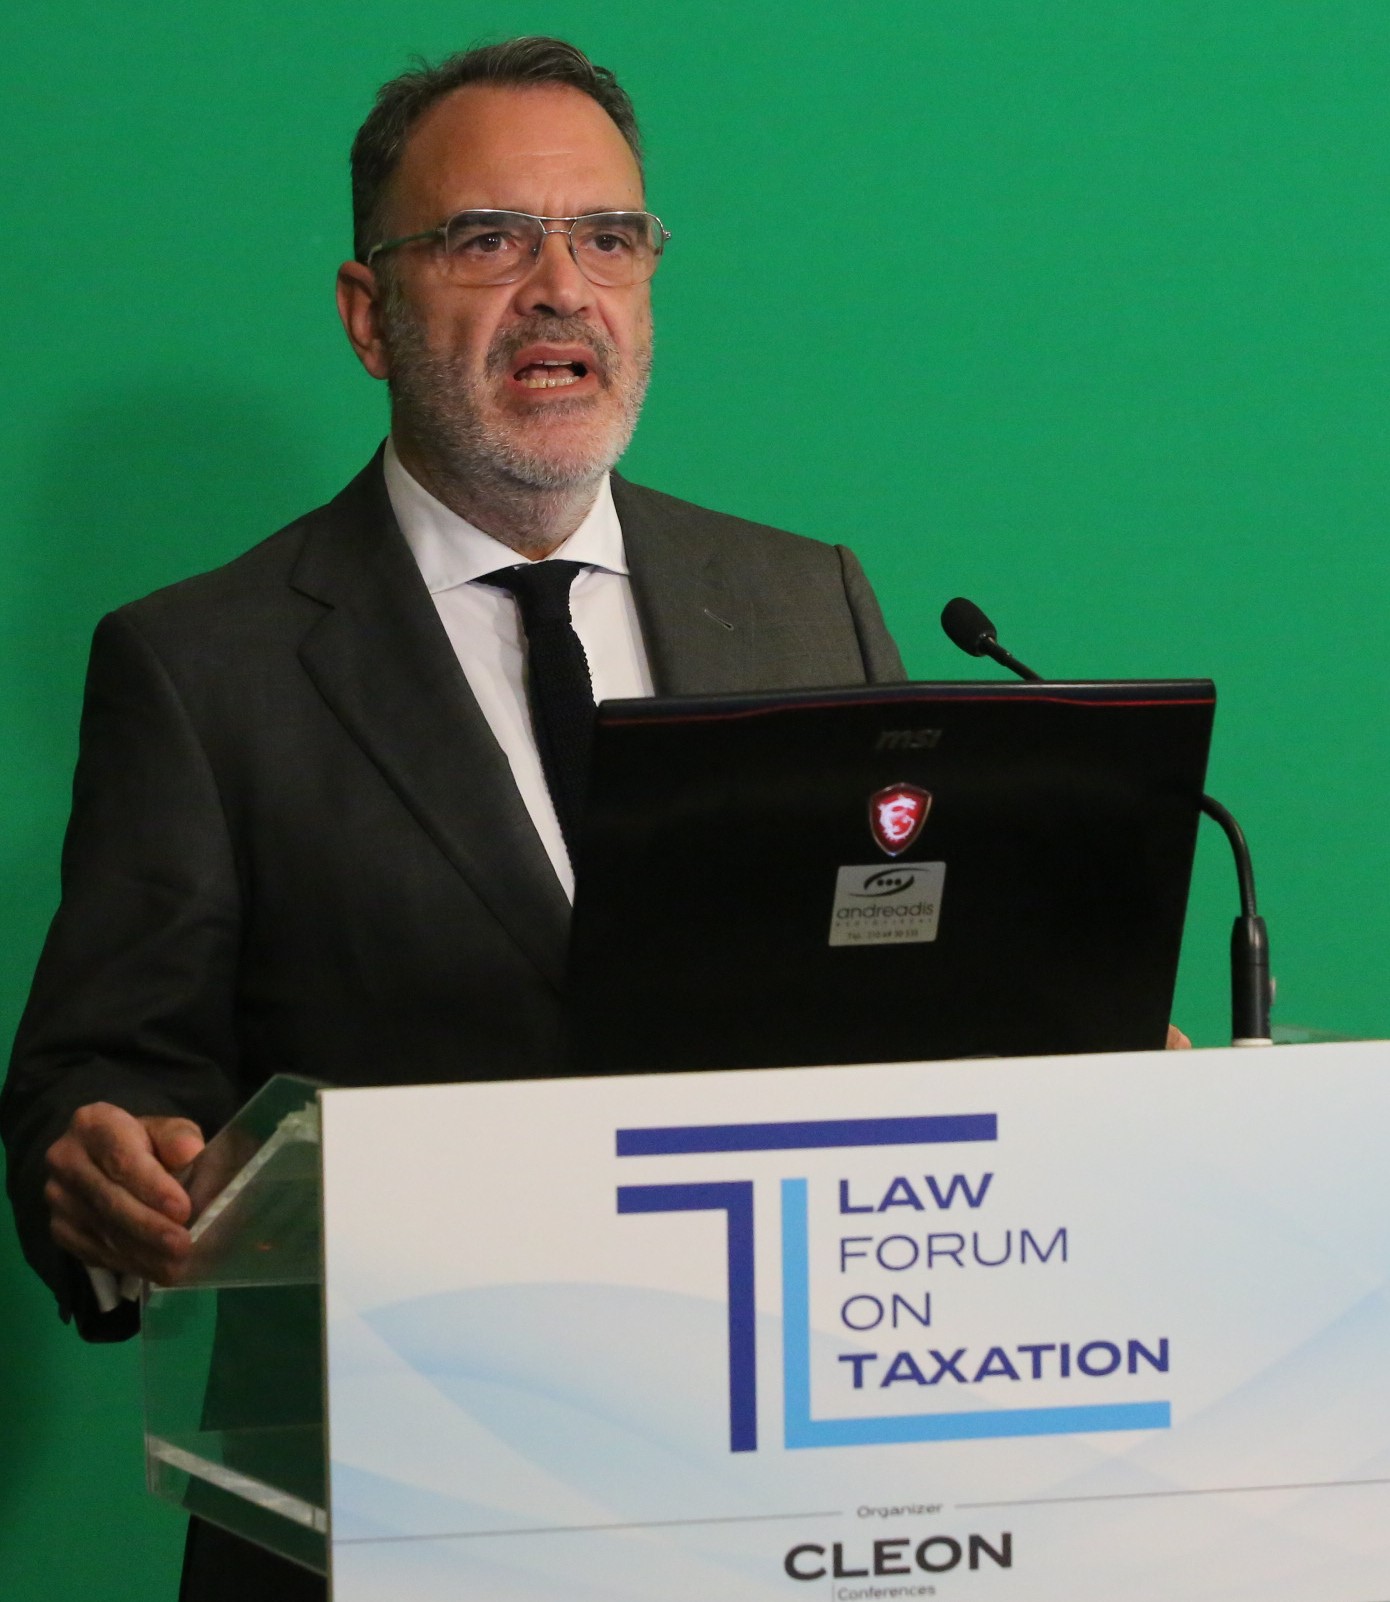 Δαβέρος (ΕΛΠΕ) – Σε μία εποχή προκλήσεων, ο ρόλος της φορολογίας αλλάζει διεθνώς